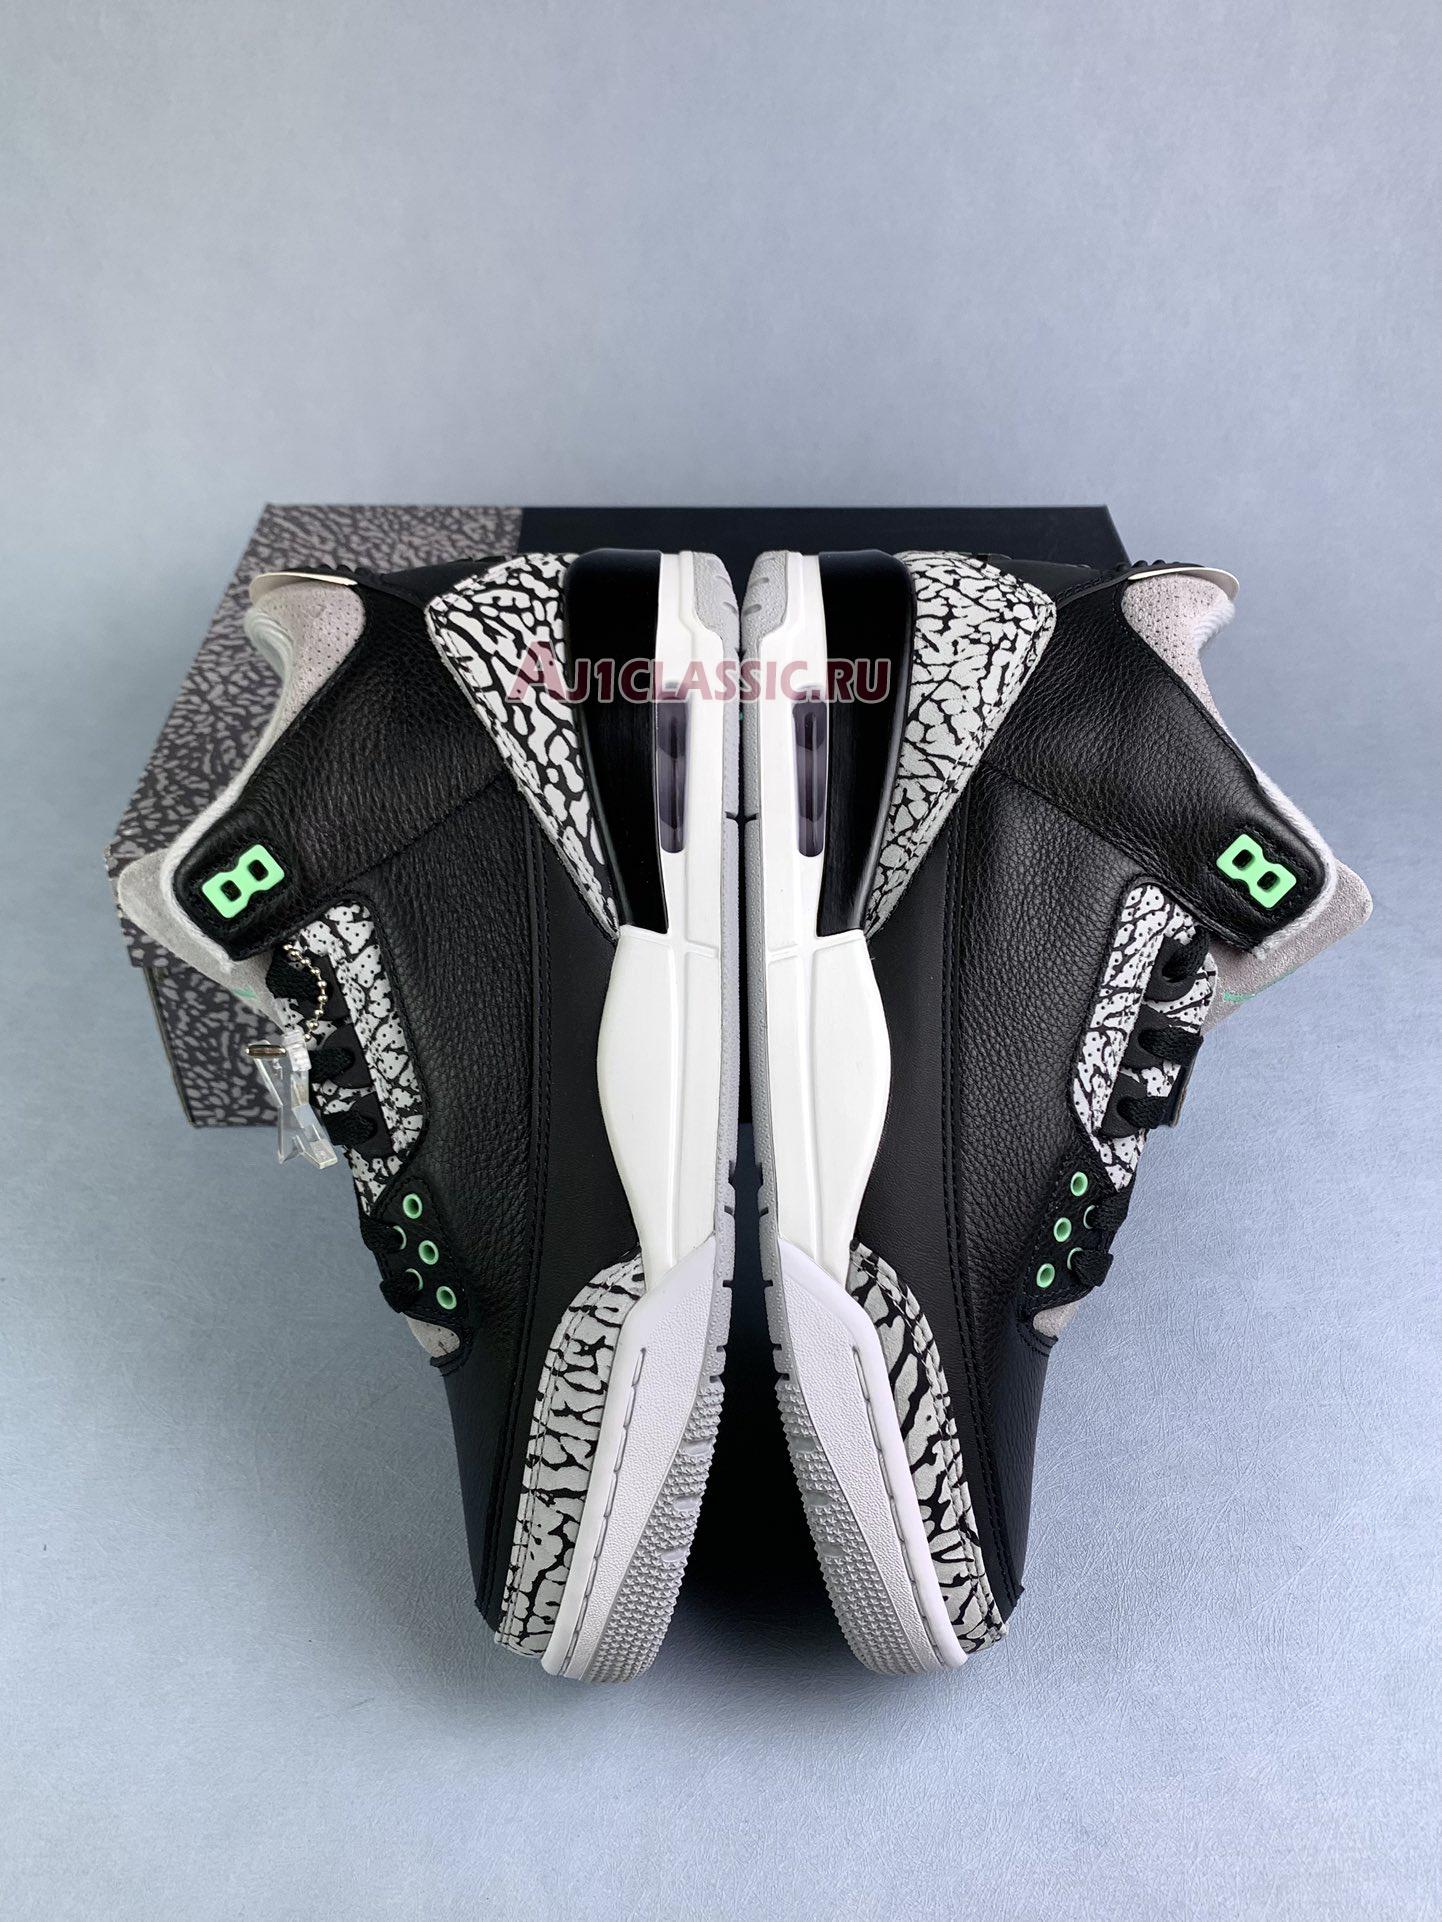 Air Jordan 3 Retro "Green Glow" CT8532-031